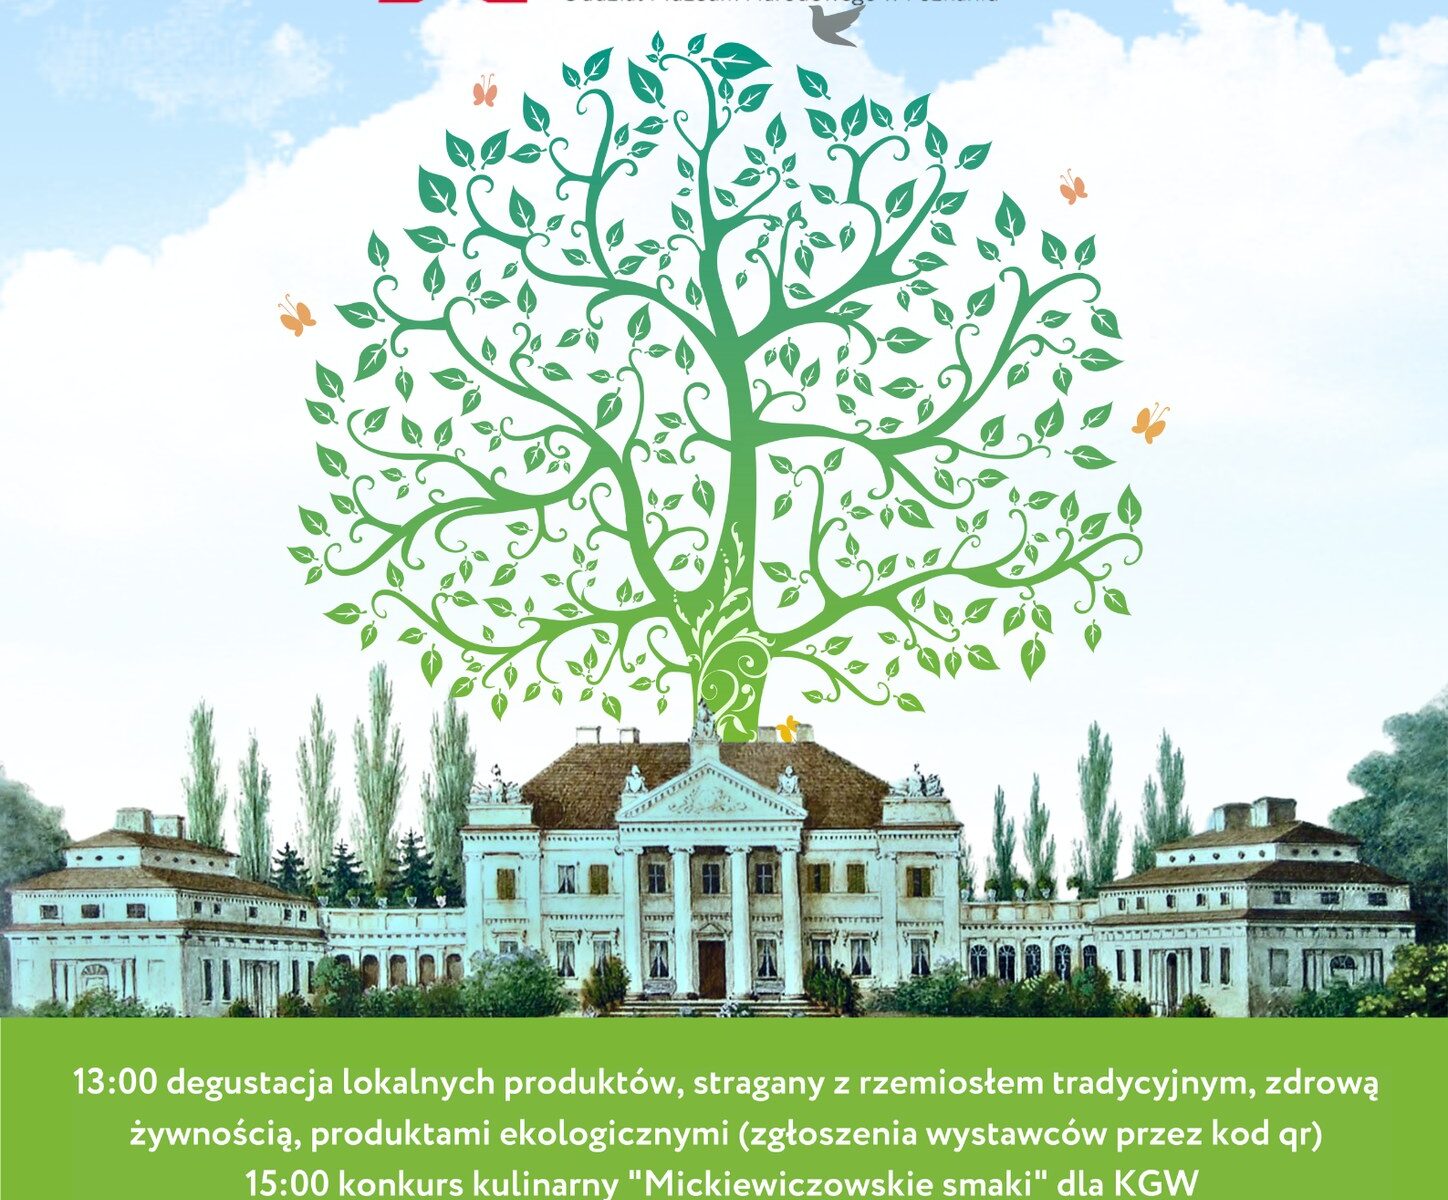 Plakat z grafiką drzewa, w tle fasada pałacu w Śmiełowie, na dole logotypy organizatorów wydarzenia. Nazwa wydarzenia na plakacie EKO ŚMIEŁÓW.